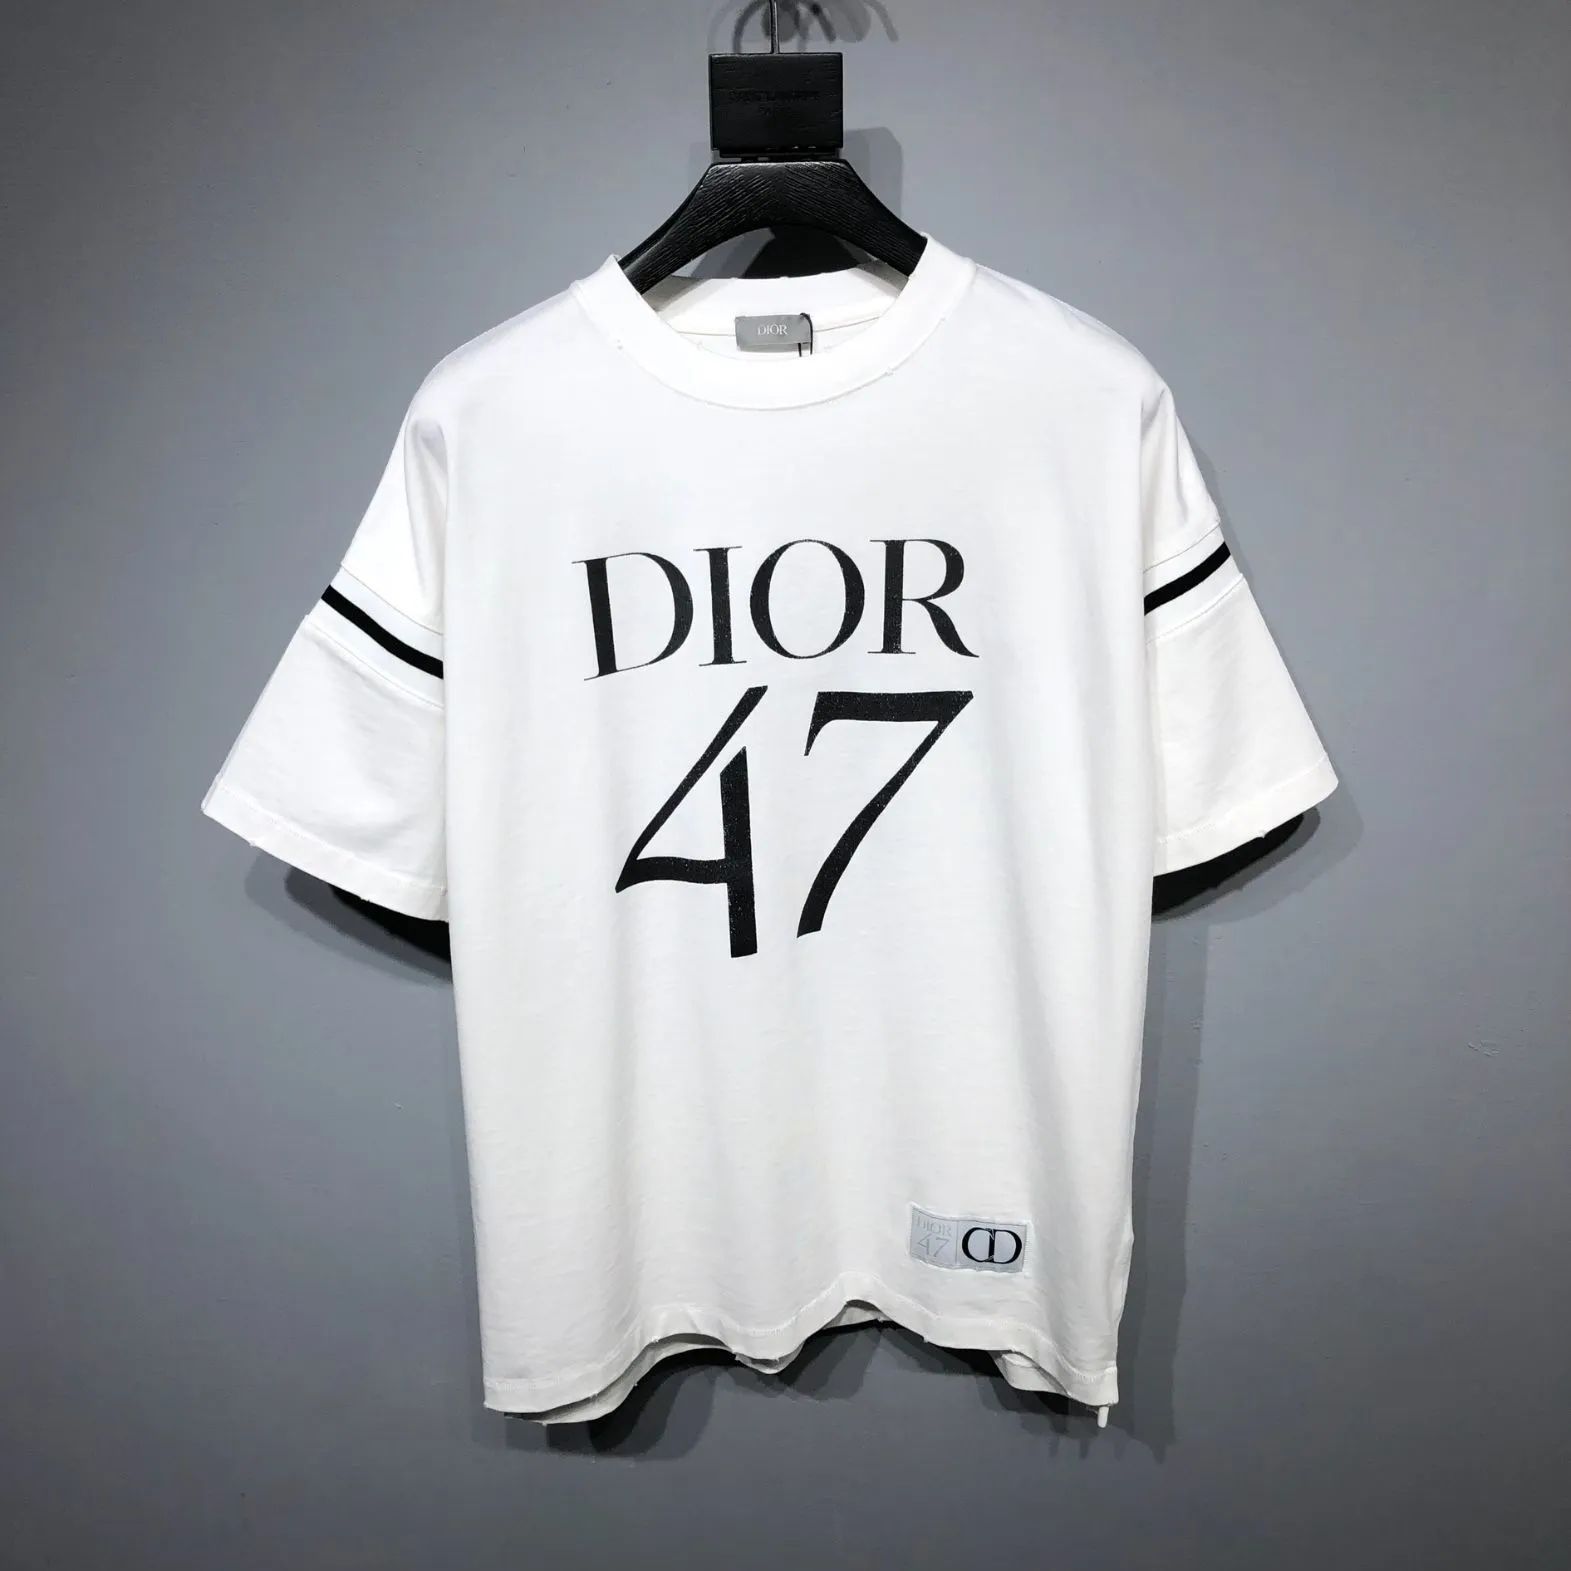 クリスチャンディオール Dior 47 ロゴ プリント 半袖Tシャツ - メルカリ